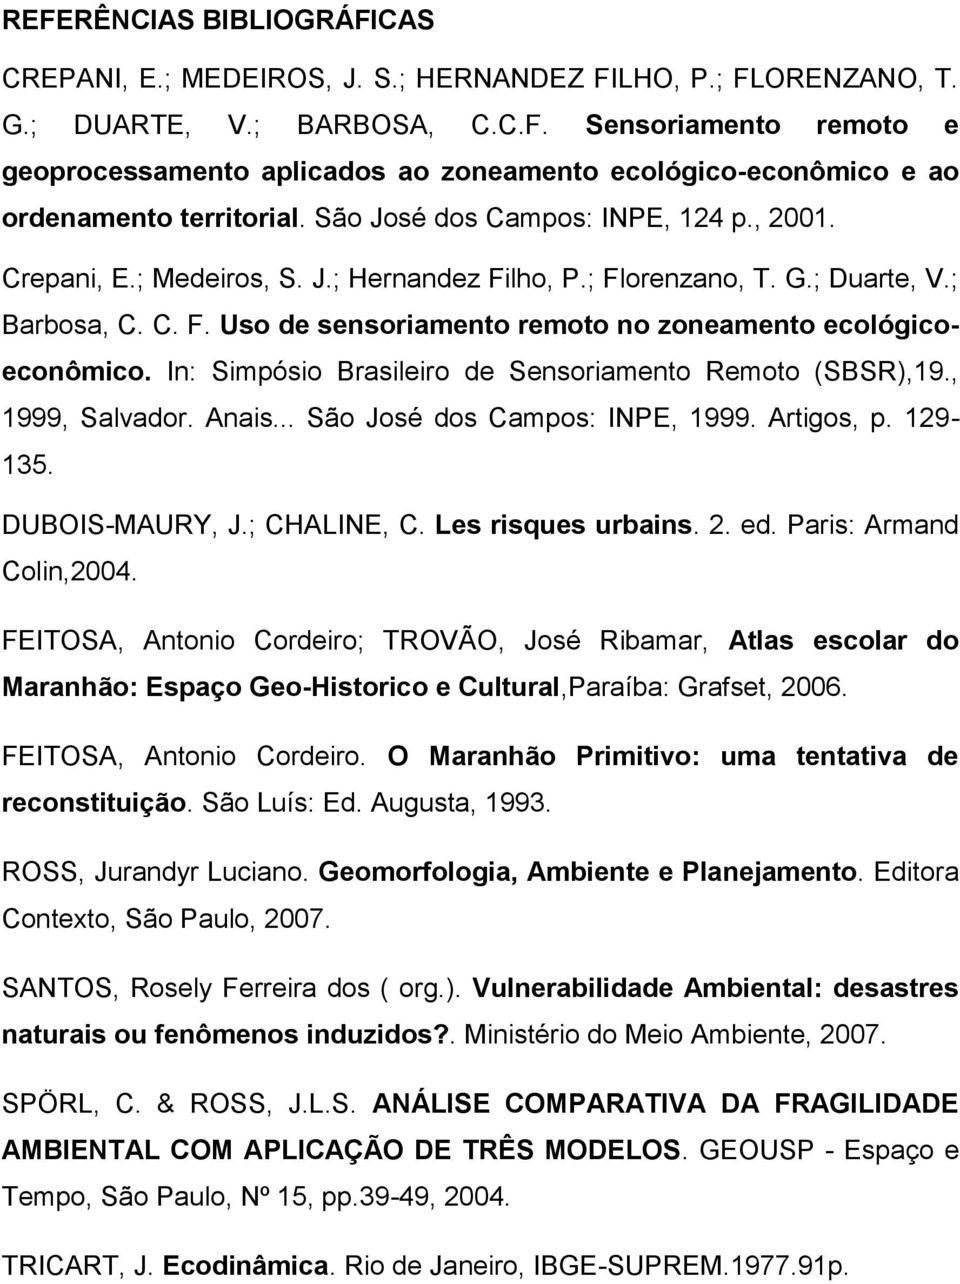 In: Simpósio Brasileiro de Sensoriamento Remoto (SBSR),19., 1999, Salvador. Anais... São José dos Campos: INPE, 1999. Artigos, p. 129-135. DUBOIS-MAURY, J.; CHALINE, C. Les risques urbains. 2. ed.